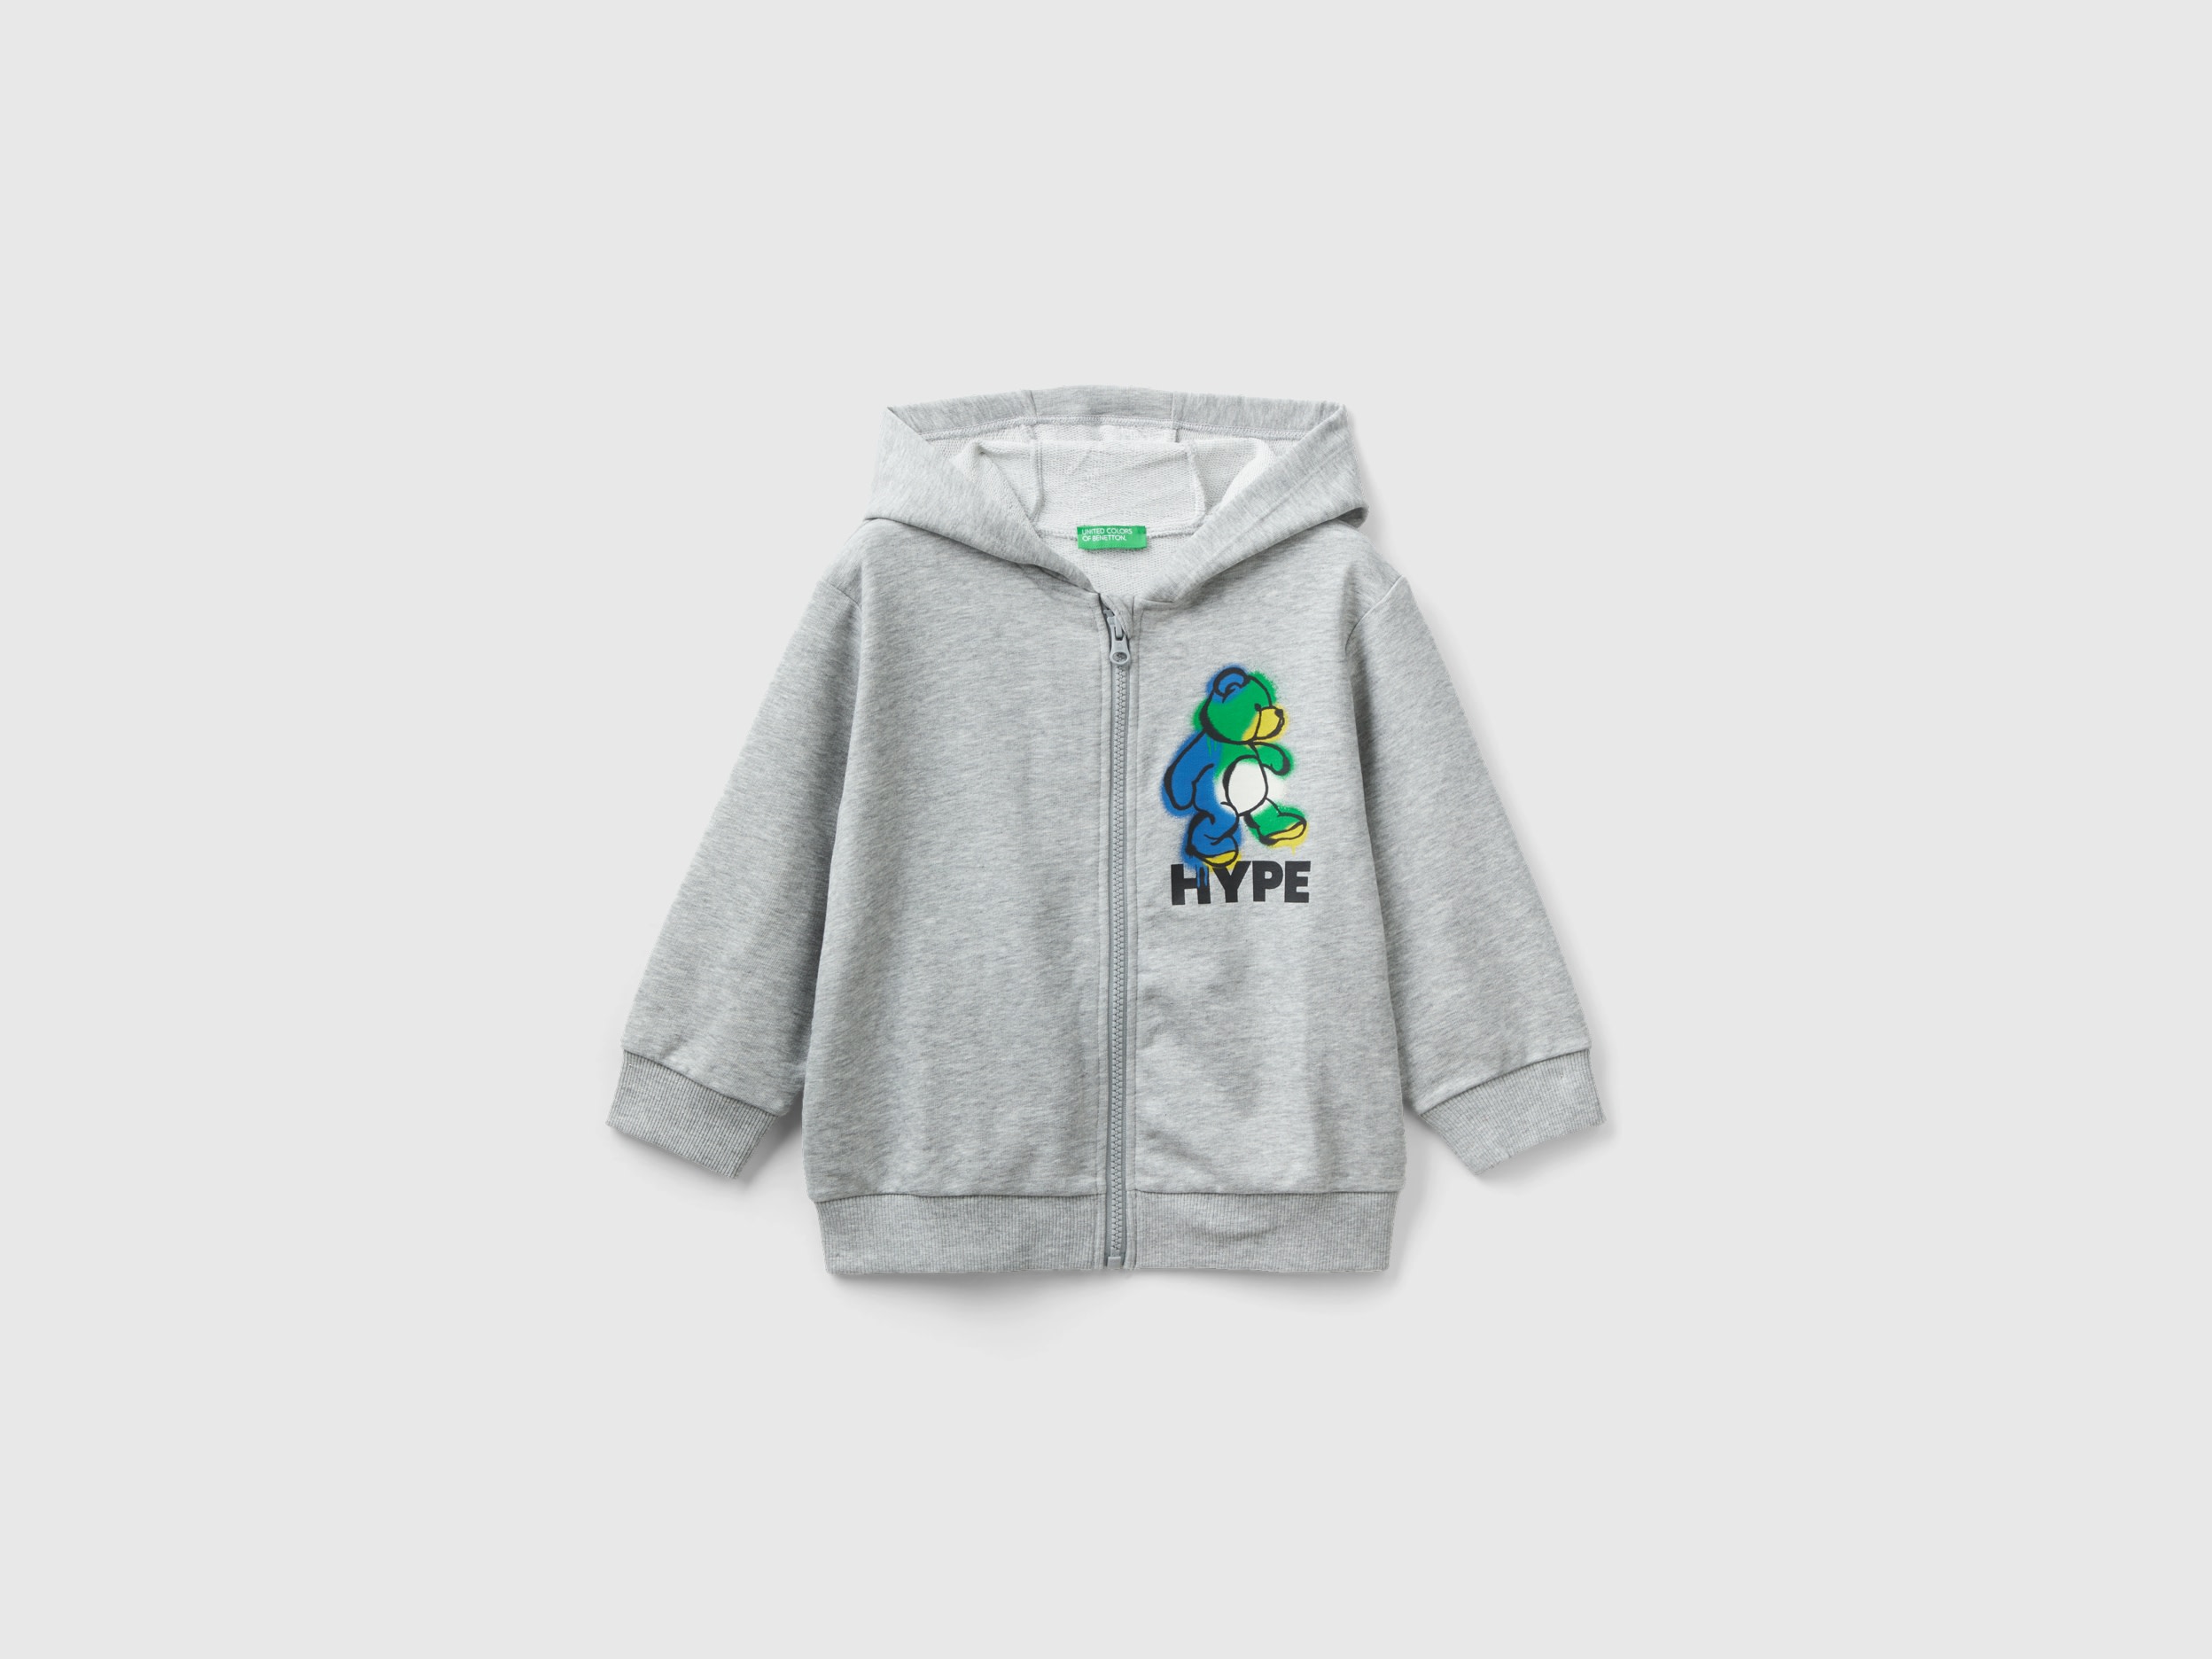 Benetton, Oversize Sweatshirt With Hood, size 18-24, Light Gray, Kids